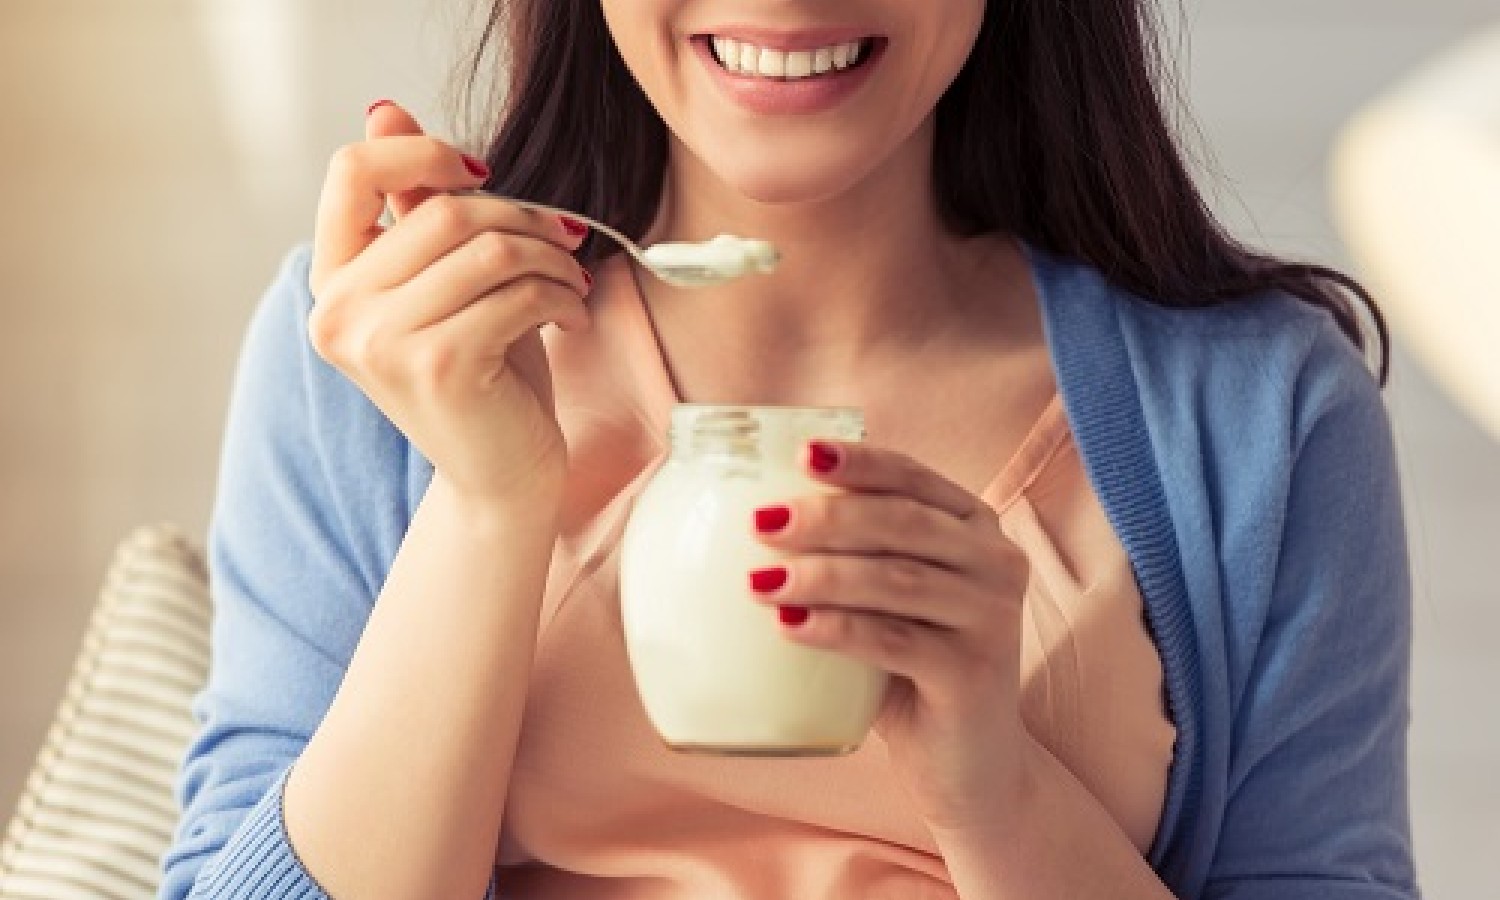 La matrice lattiero-casearia di latte, yogurt e formaggio